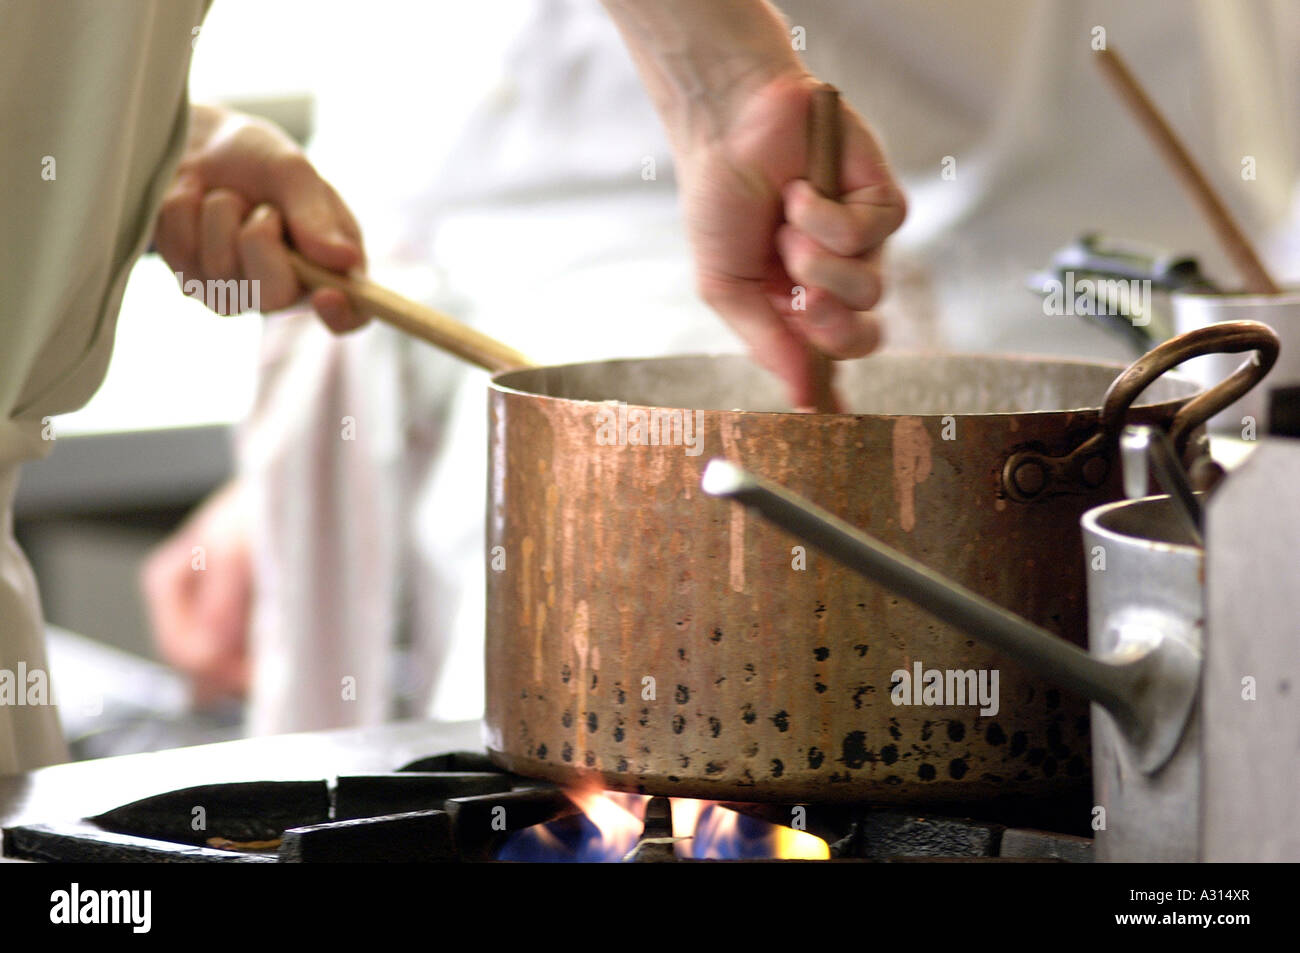 Image libre photo de chef cooking sur cuisinière en remuant une marmite en cuivre dans une cuisine de restaurant commercial britannique London UK Banque D'Images